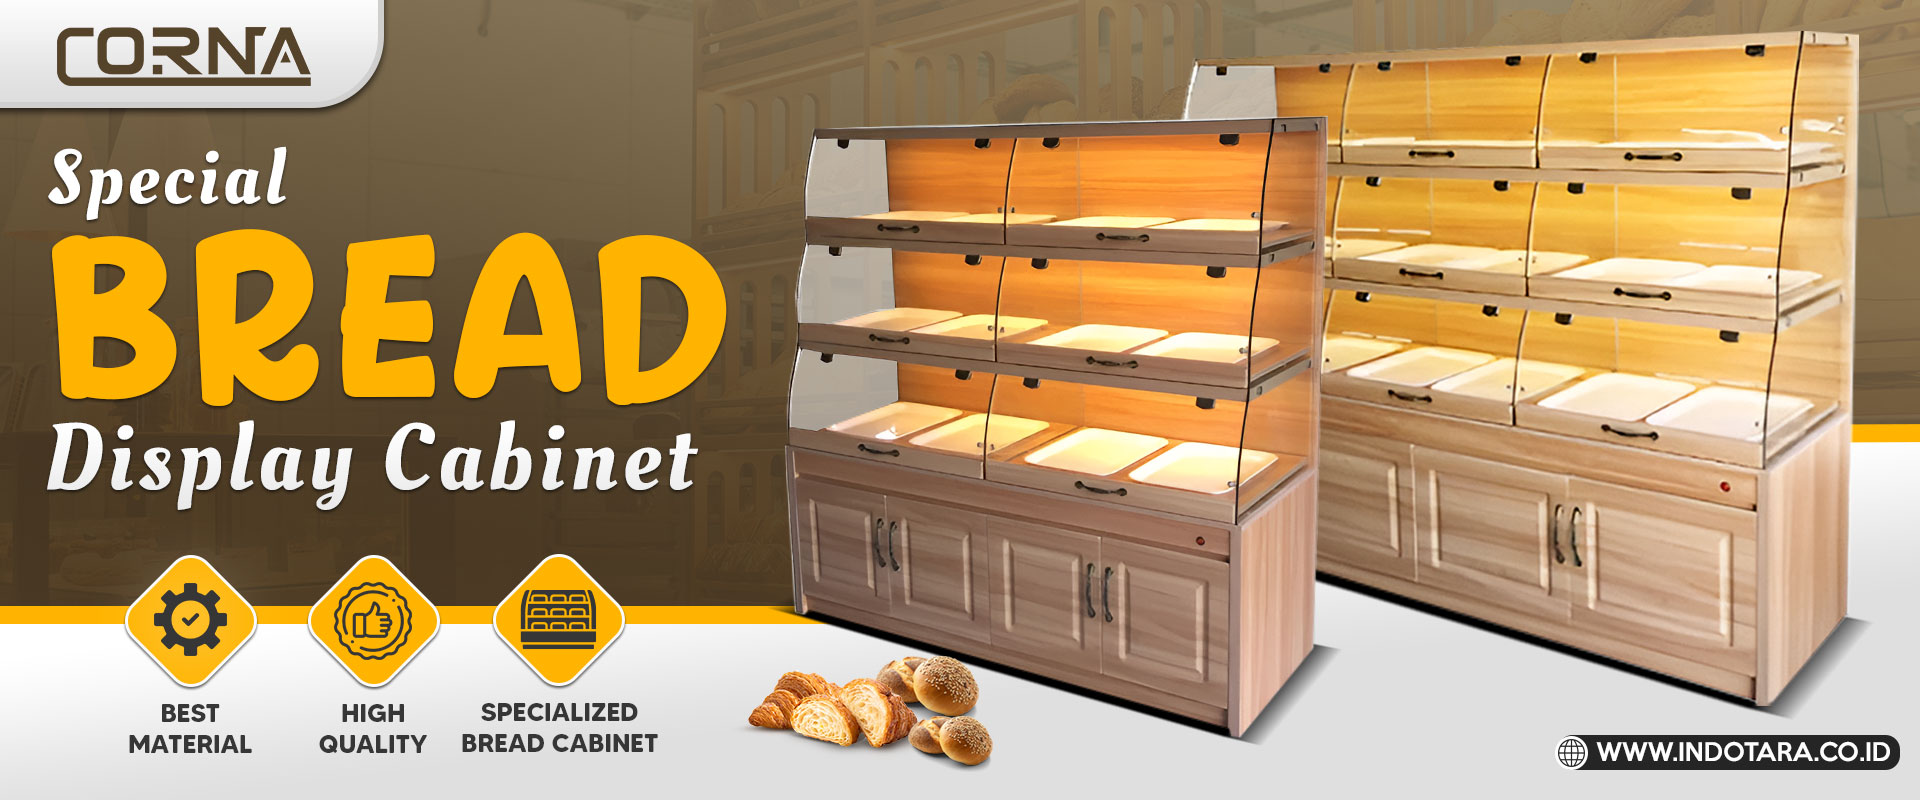 Corna bread cabinet